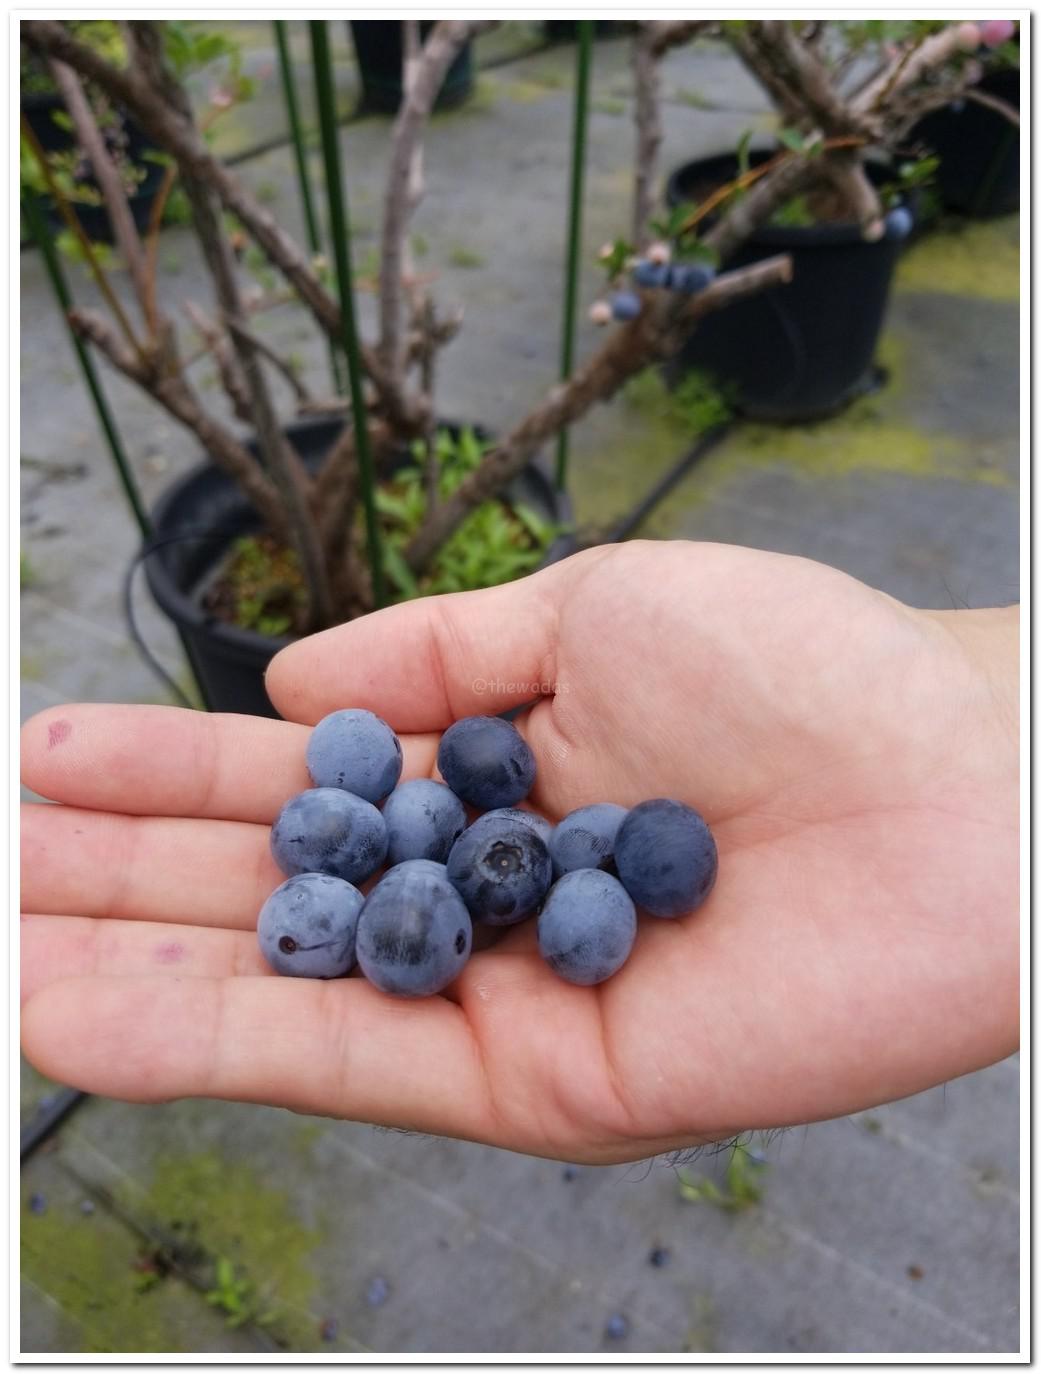 Blueberry Picking at Setouchi Fruits Garden (Setouchi City)